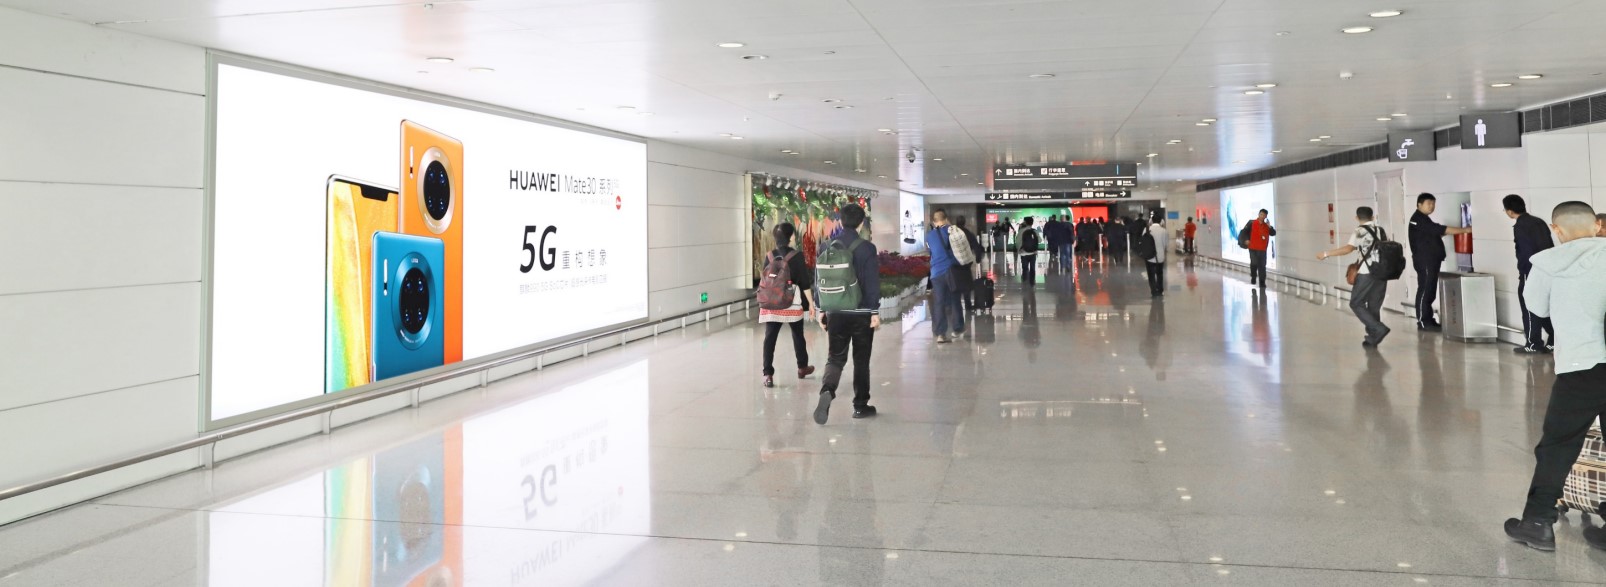 杭州萧山机场广告-T3国内到达夹层汇集口墙体灯箱DA84